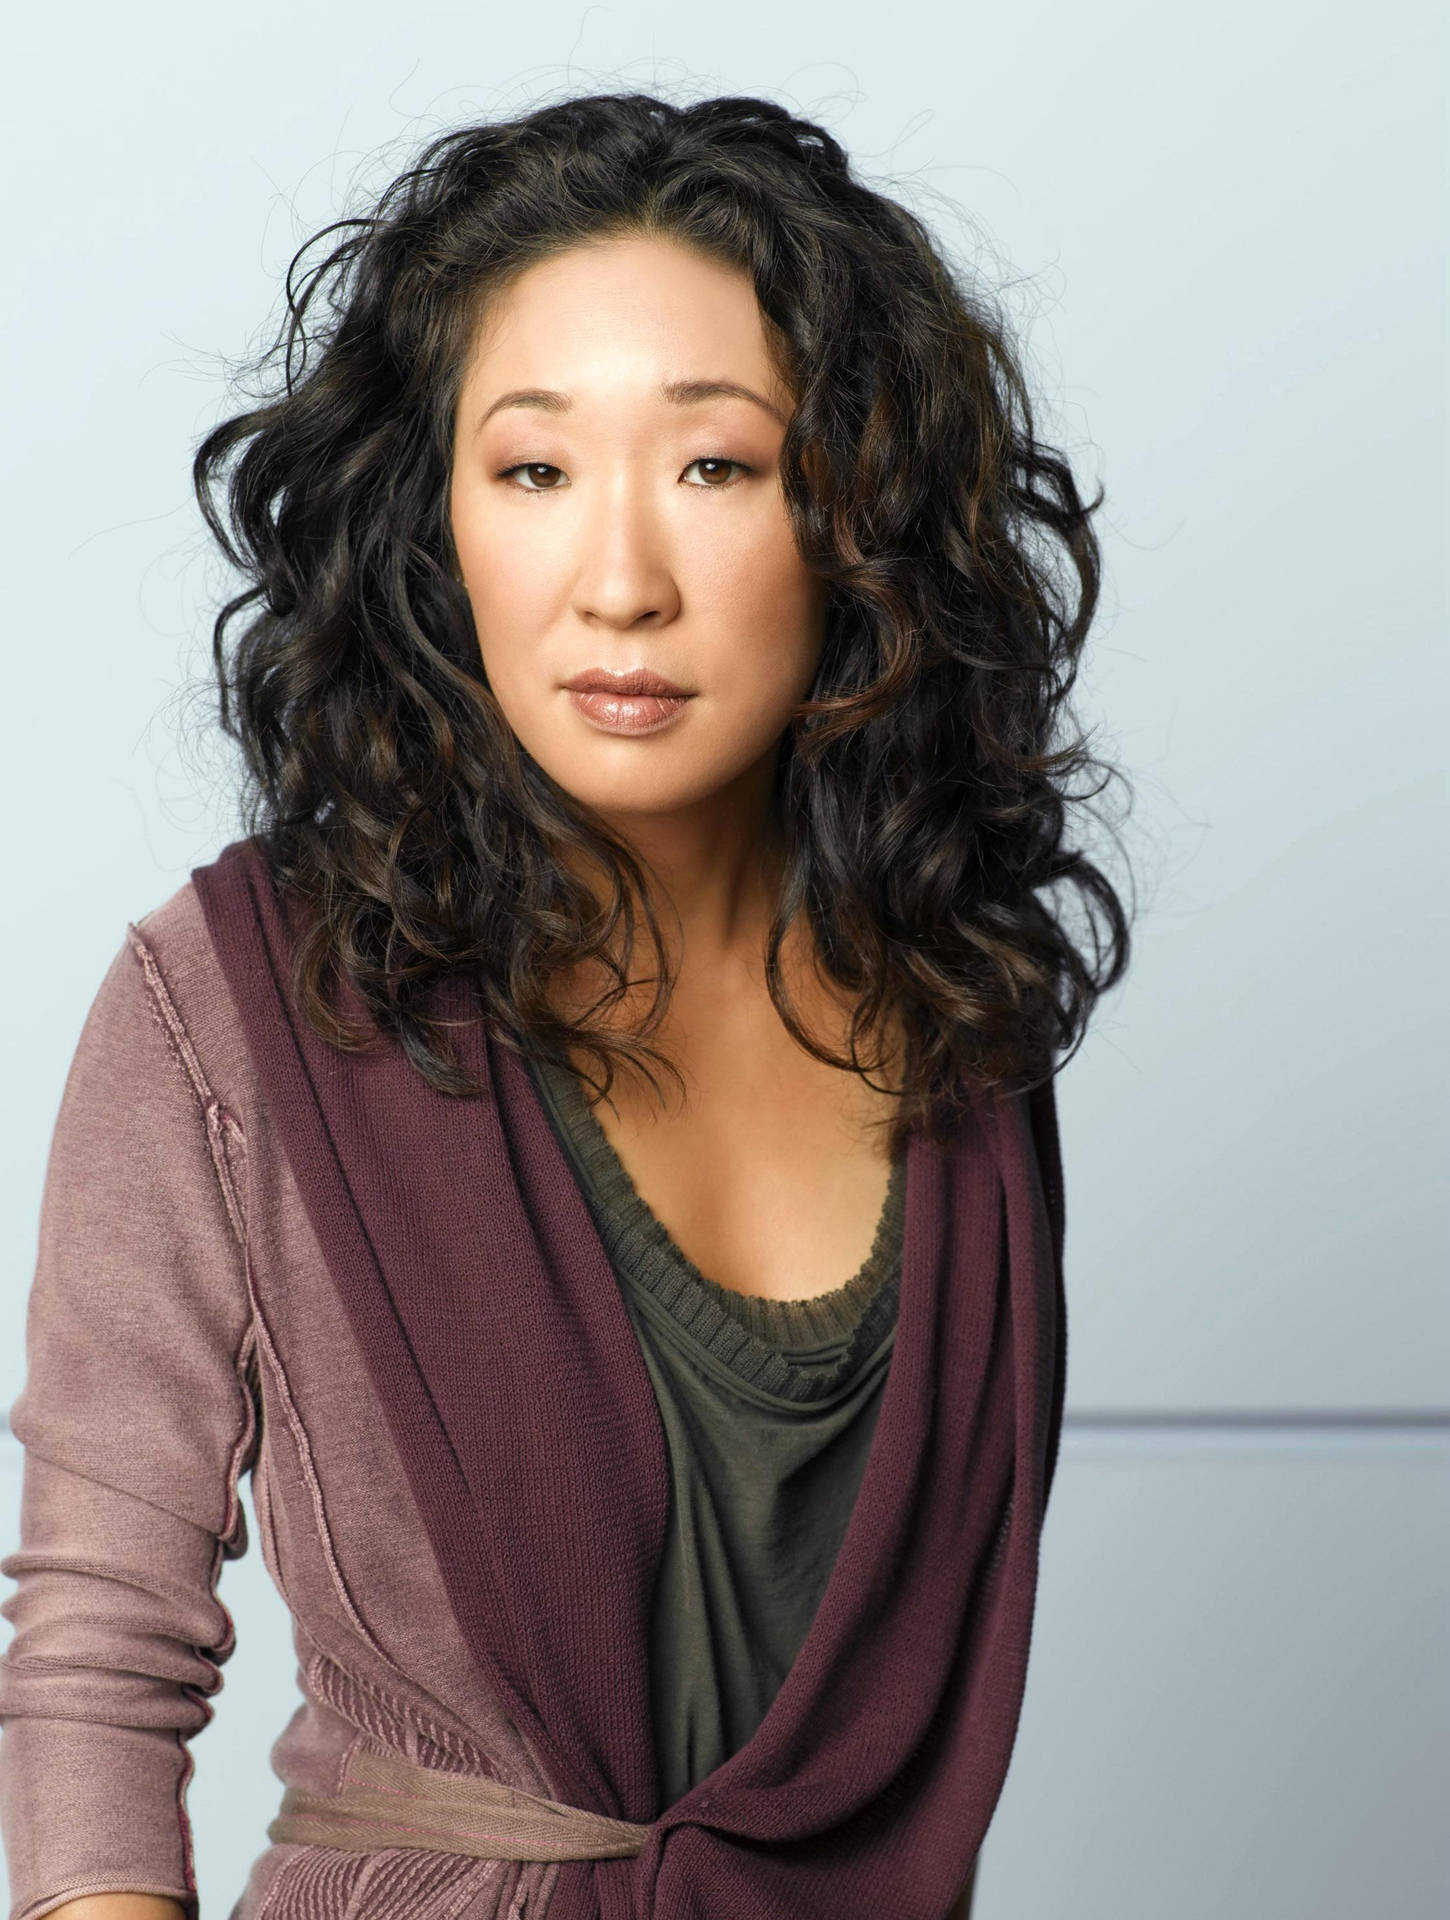 Sandraoh Som Cristina Yang För Tv-programmet Grey's Anatomy. Wallpaper